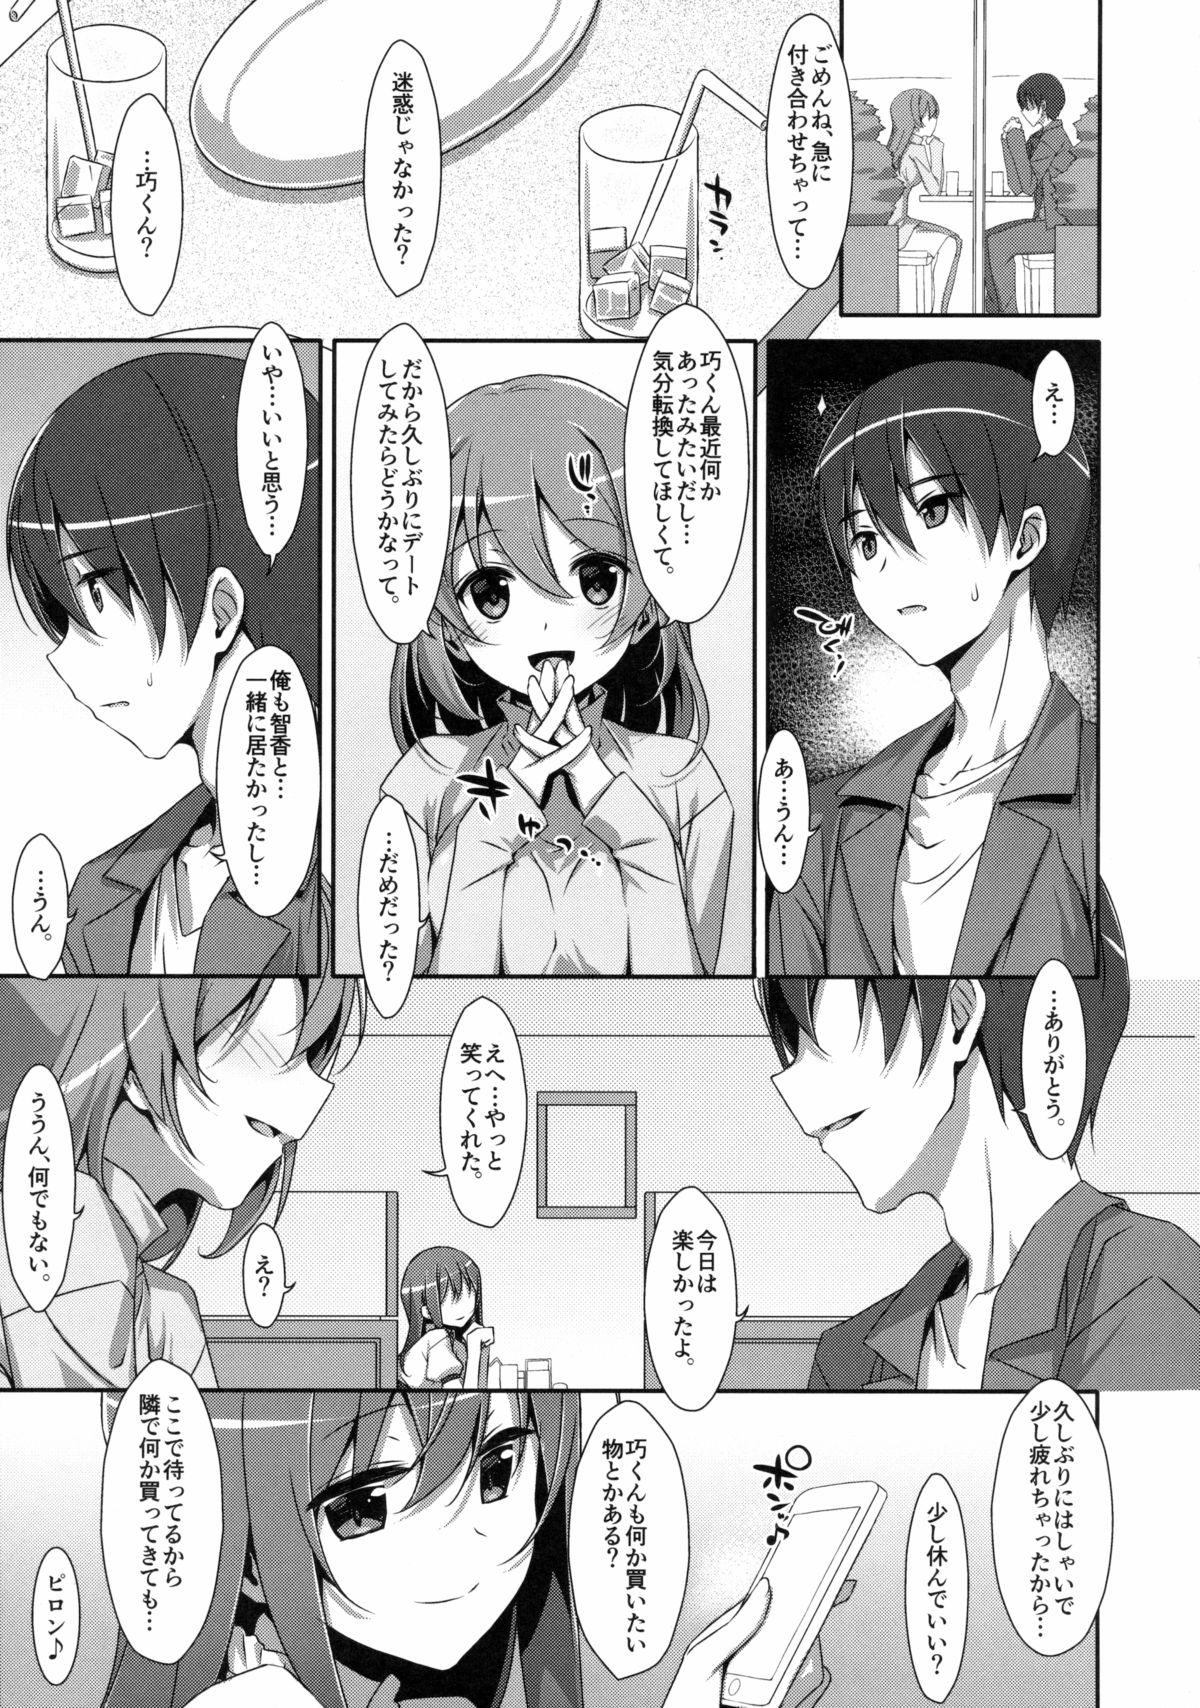 Love Watashi no, Onii-chan 2 Home - Page 4